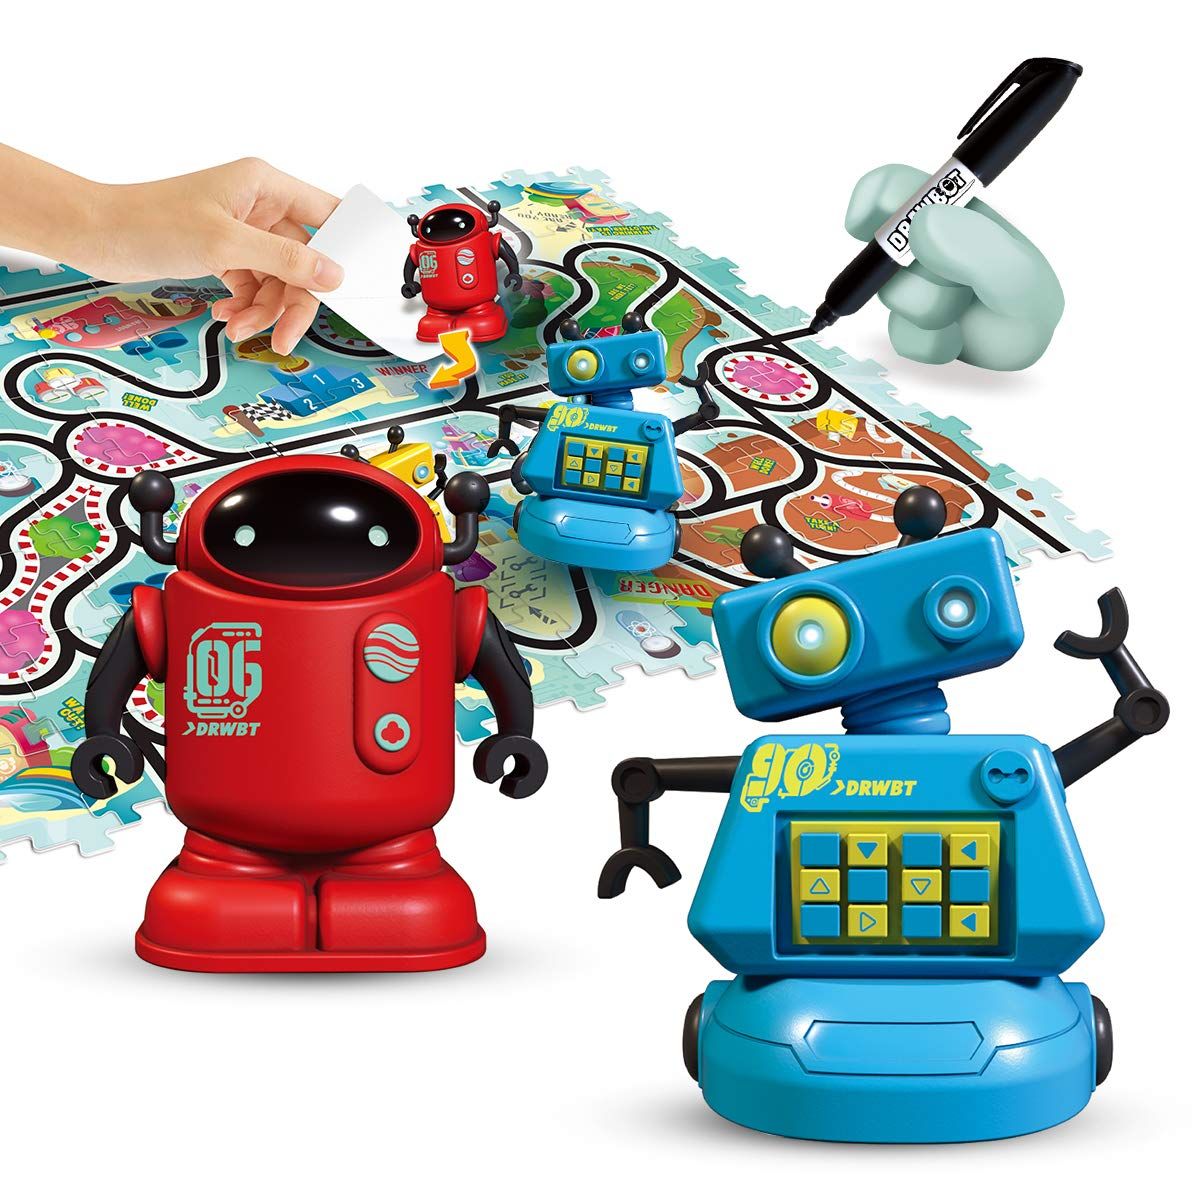 Indukcyjne zabawki-roboty (1)